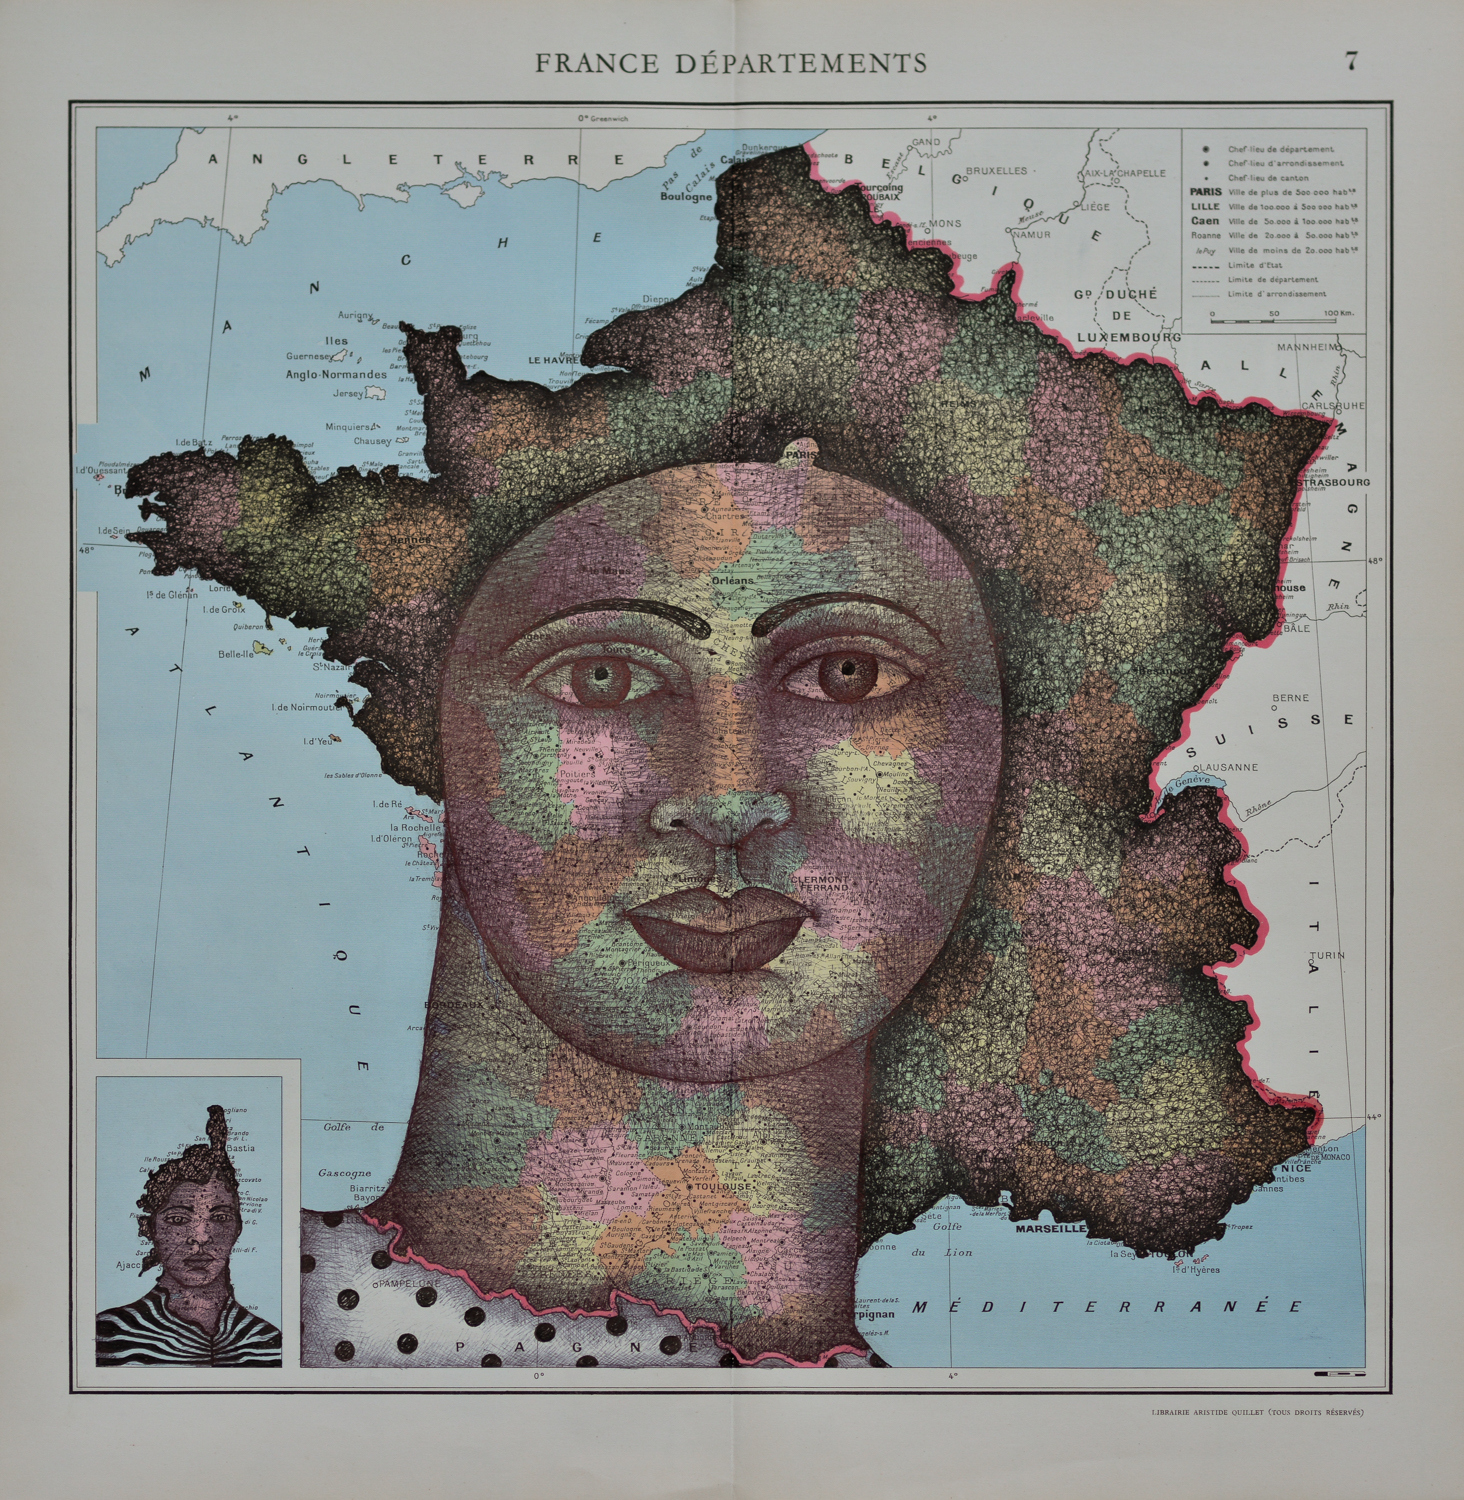 Clara CASTAGNÉ, "France département", encre sur papier, 40x50 cm, 1200€